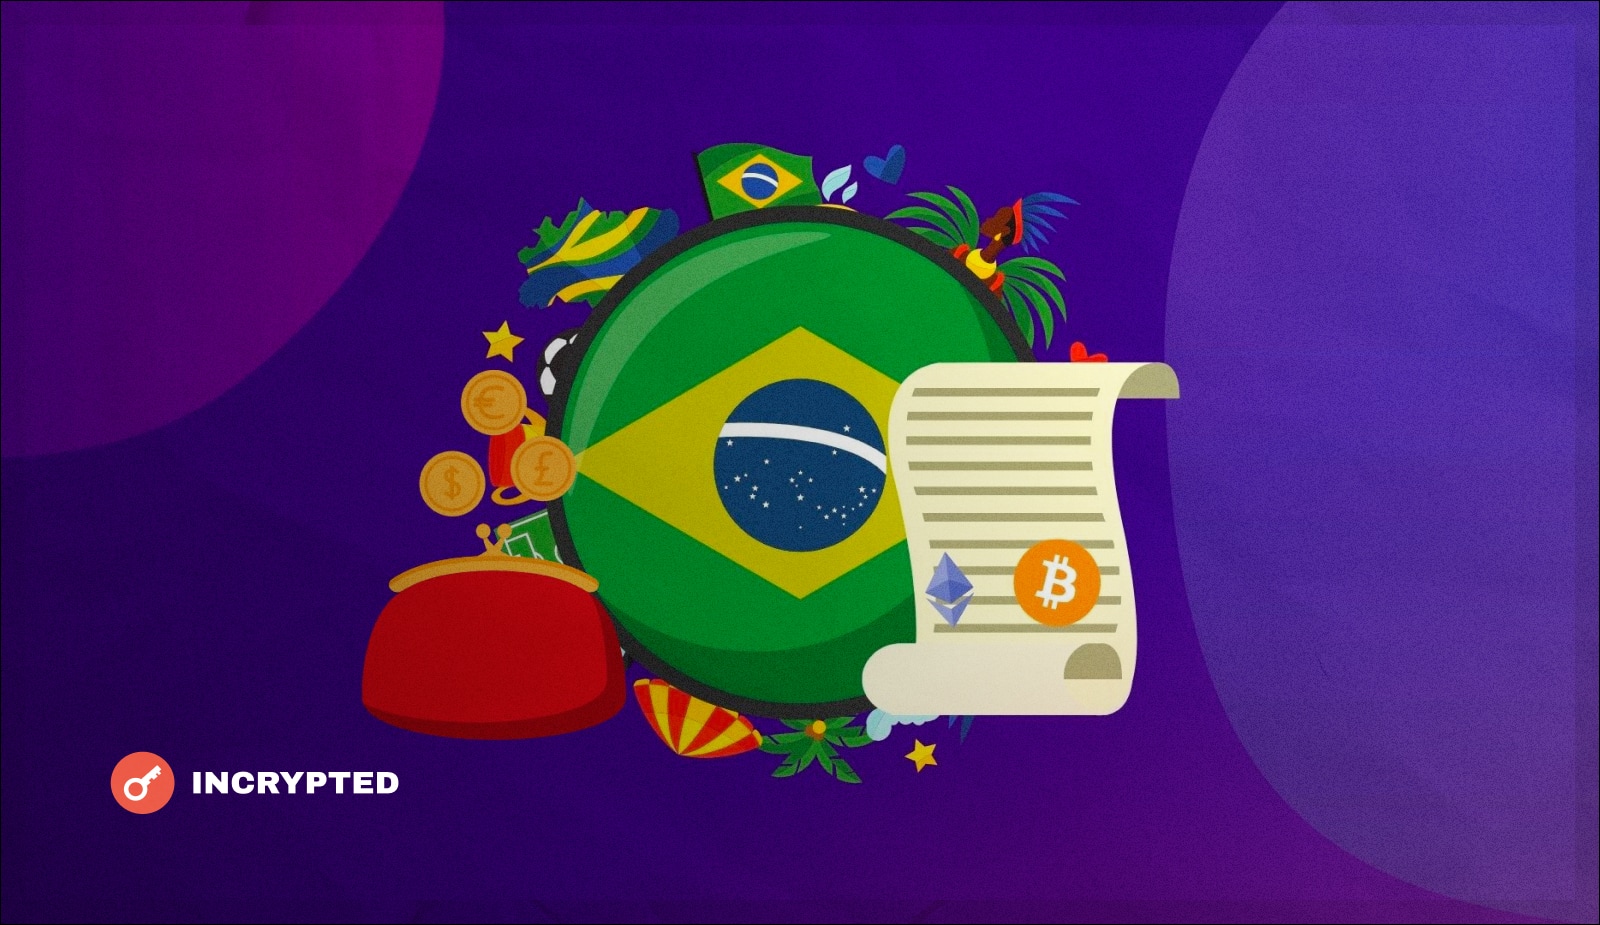 Бразильский конгрессмен предложил использовать криптовалюты для платежей. Заглавный коллаж новости.